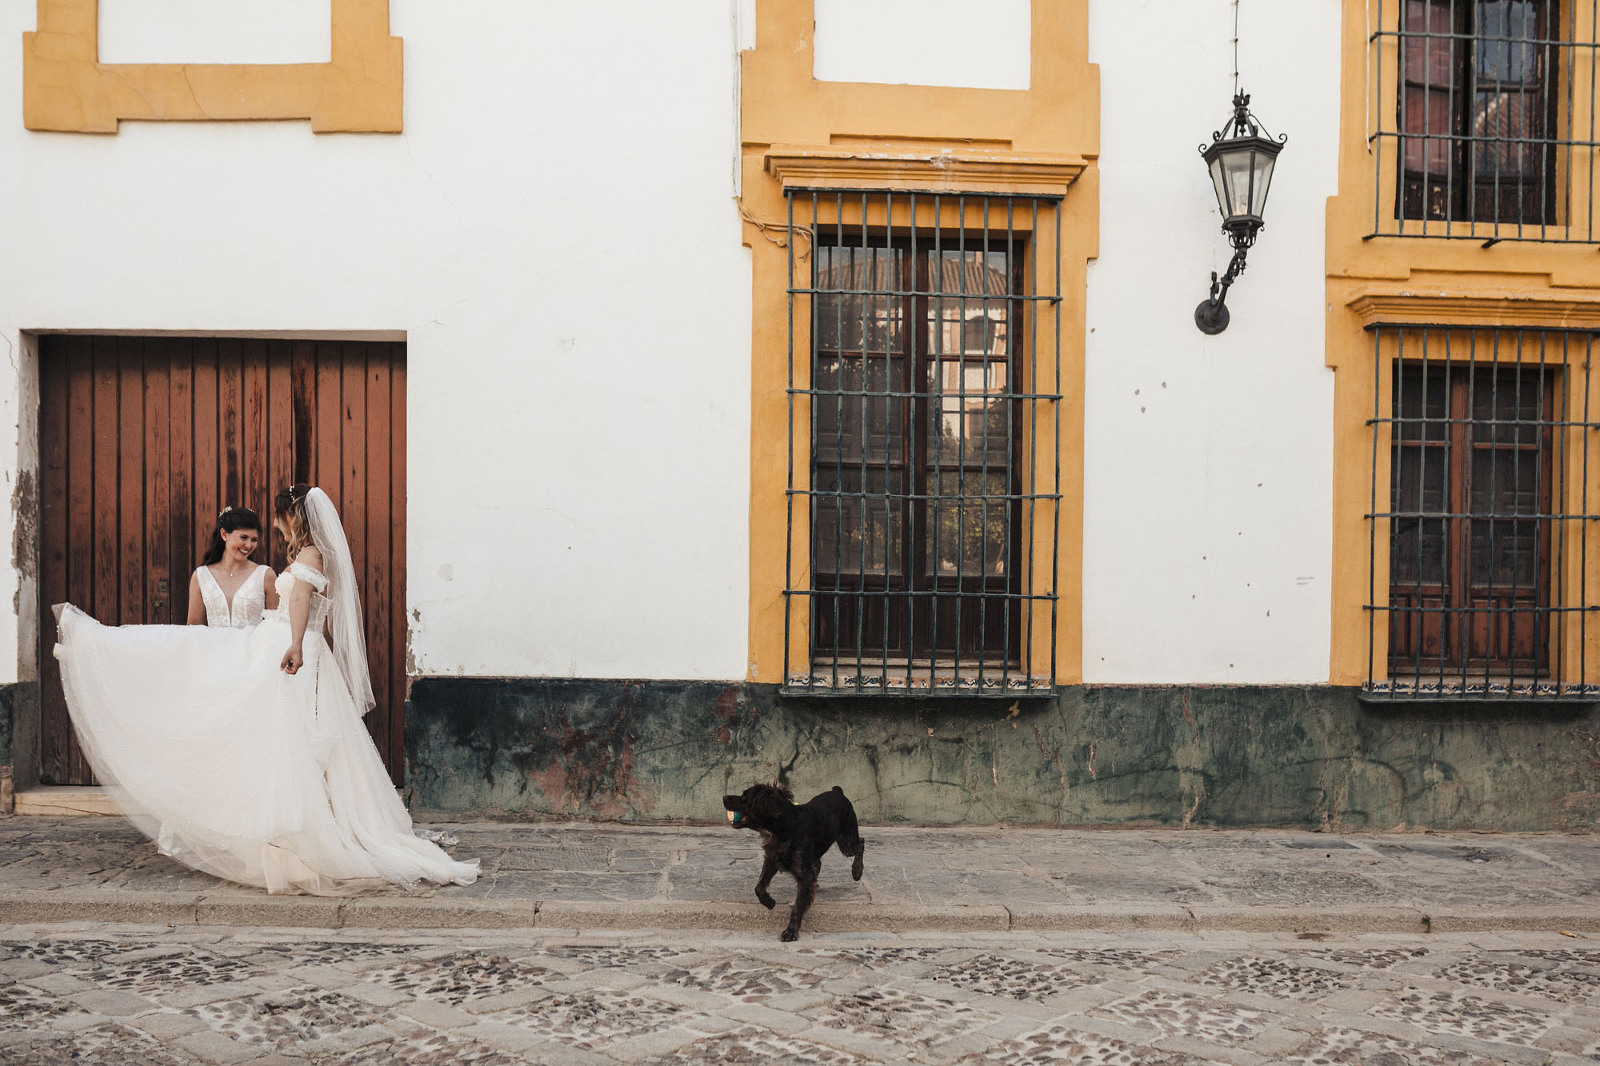 Fotografia de boda en Sevilla. Plaza de España. Juan Luis Morilla. Wedding photography in Seville.